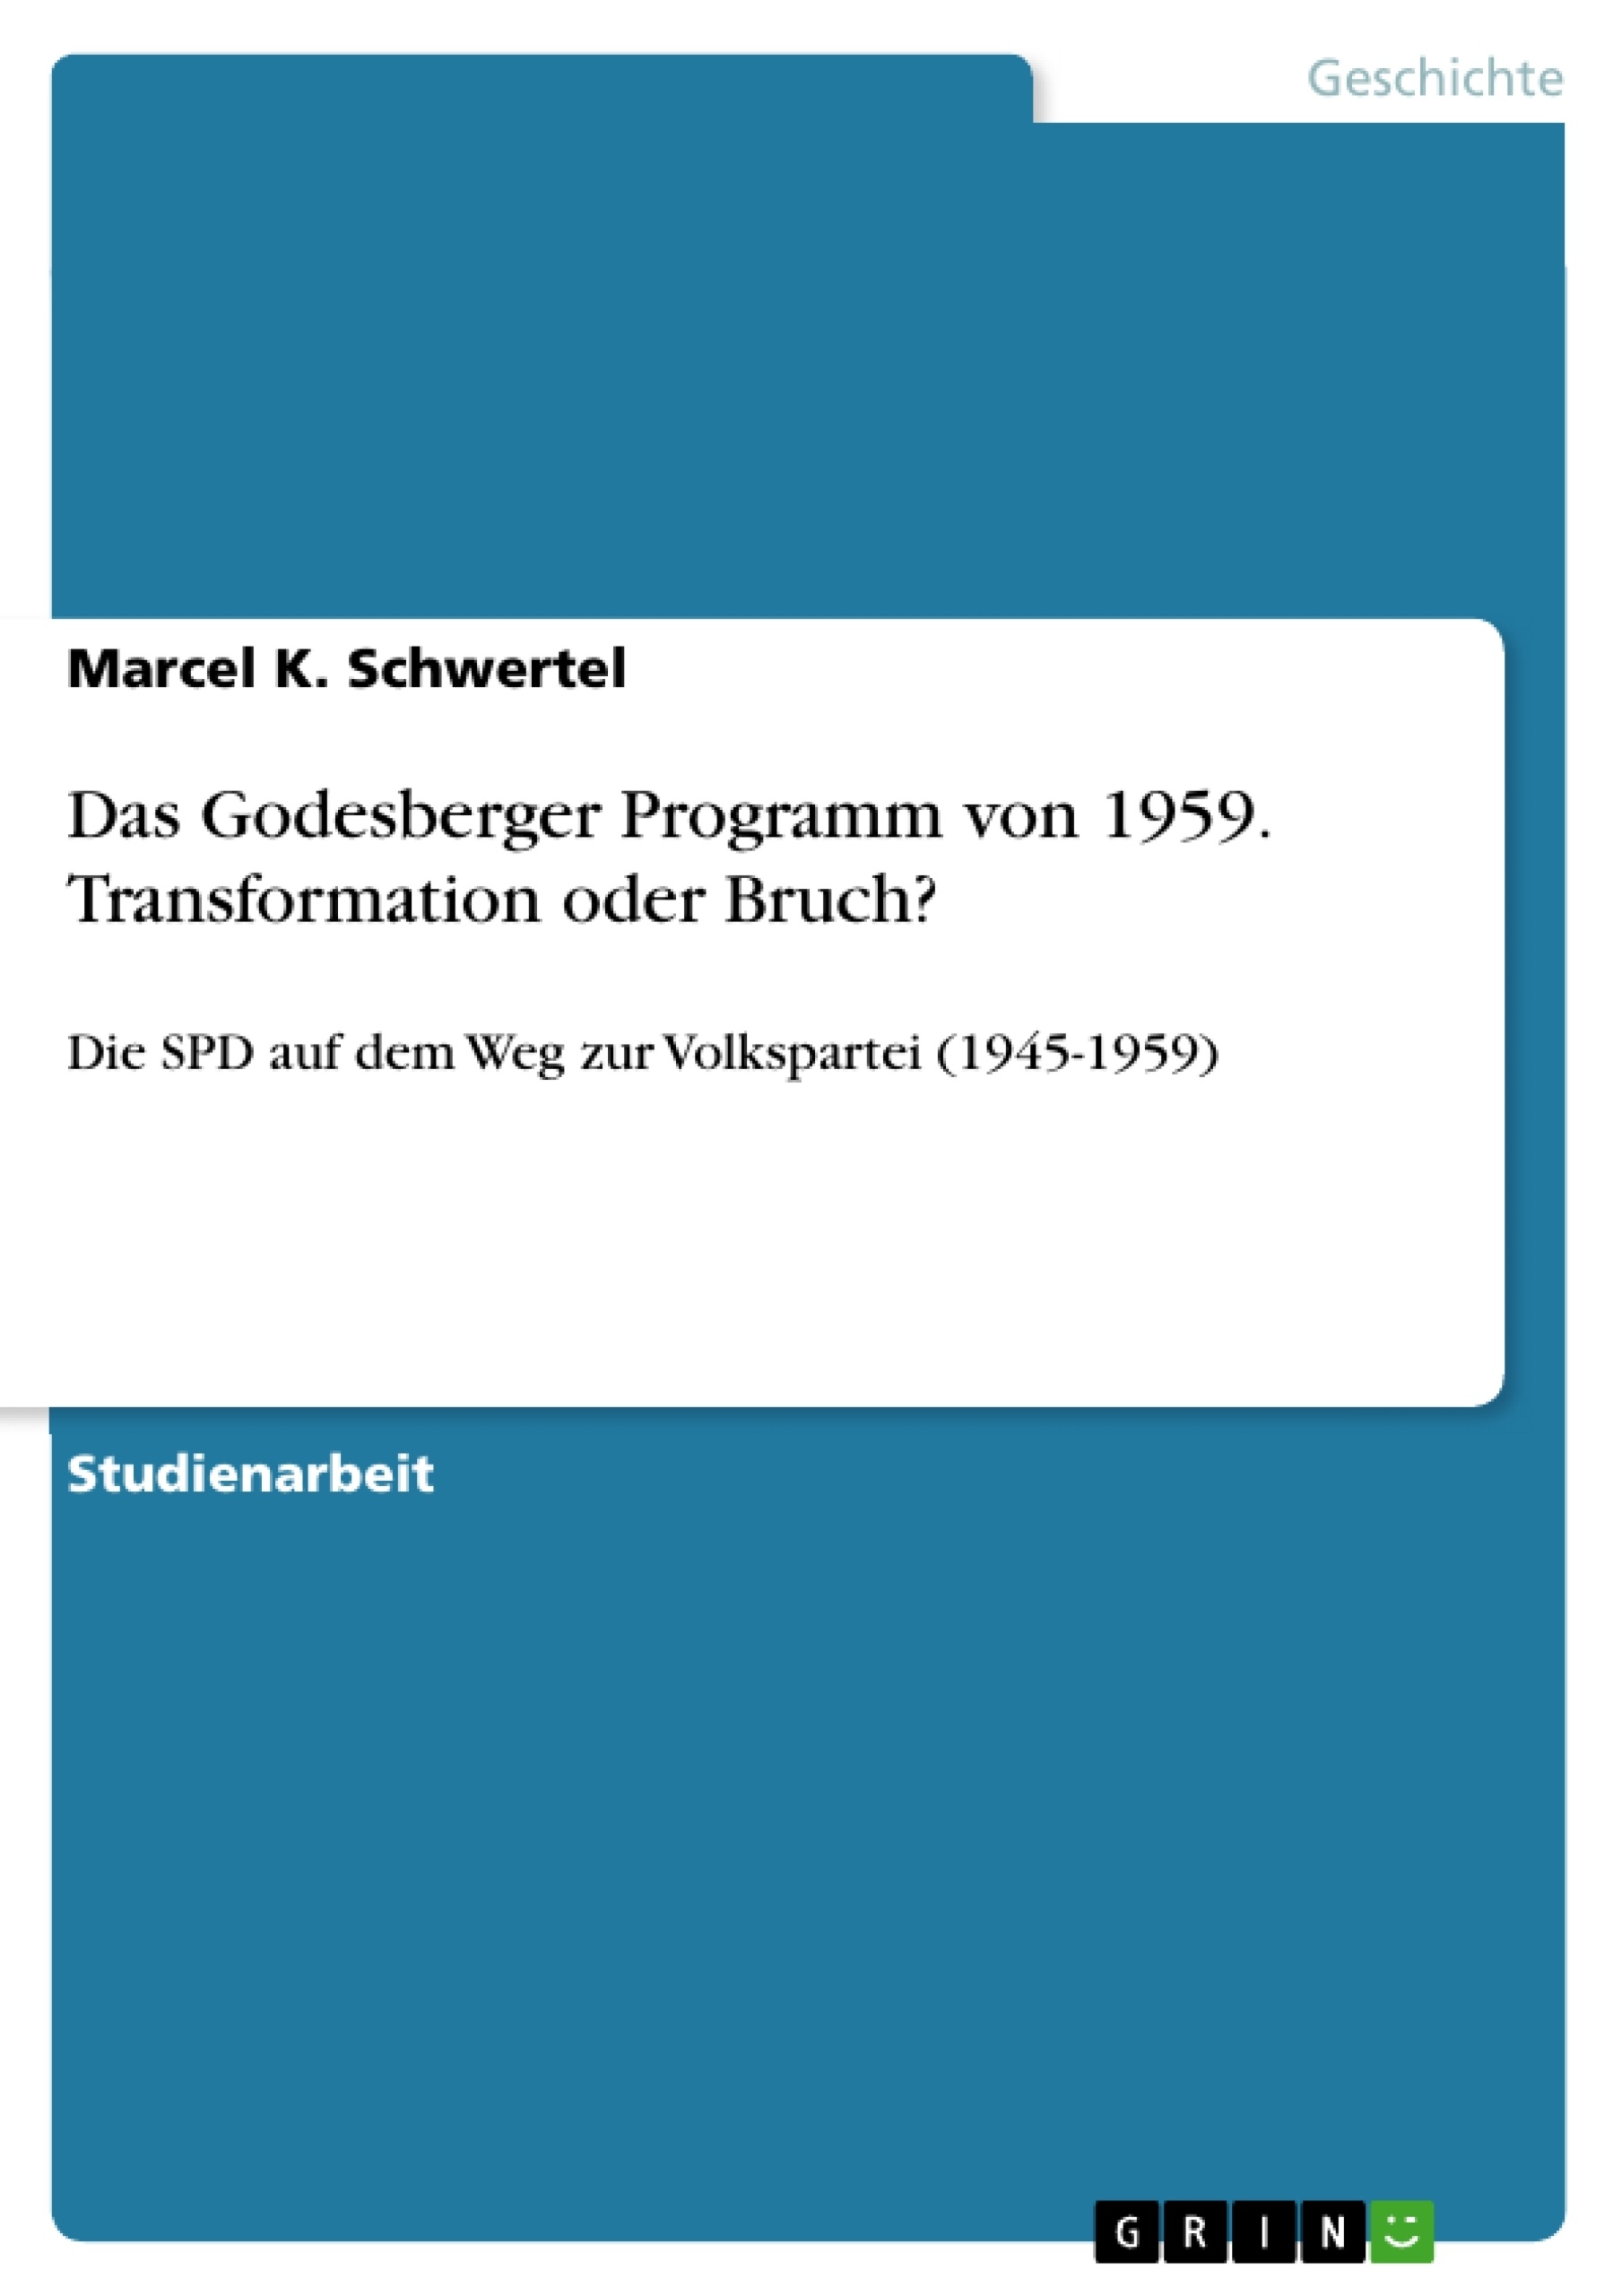 Title: Das Godesberger Programm von 1959. Transformation oder Bruch?